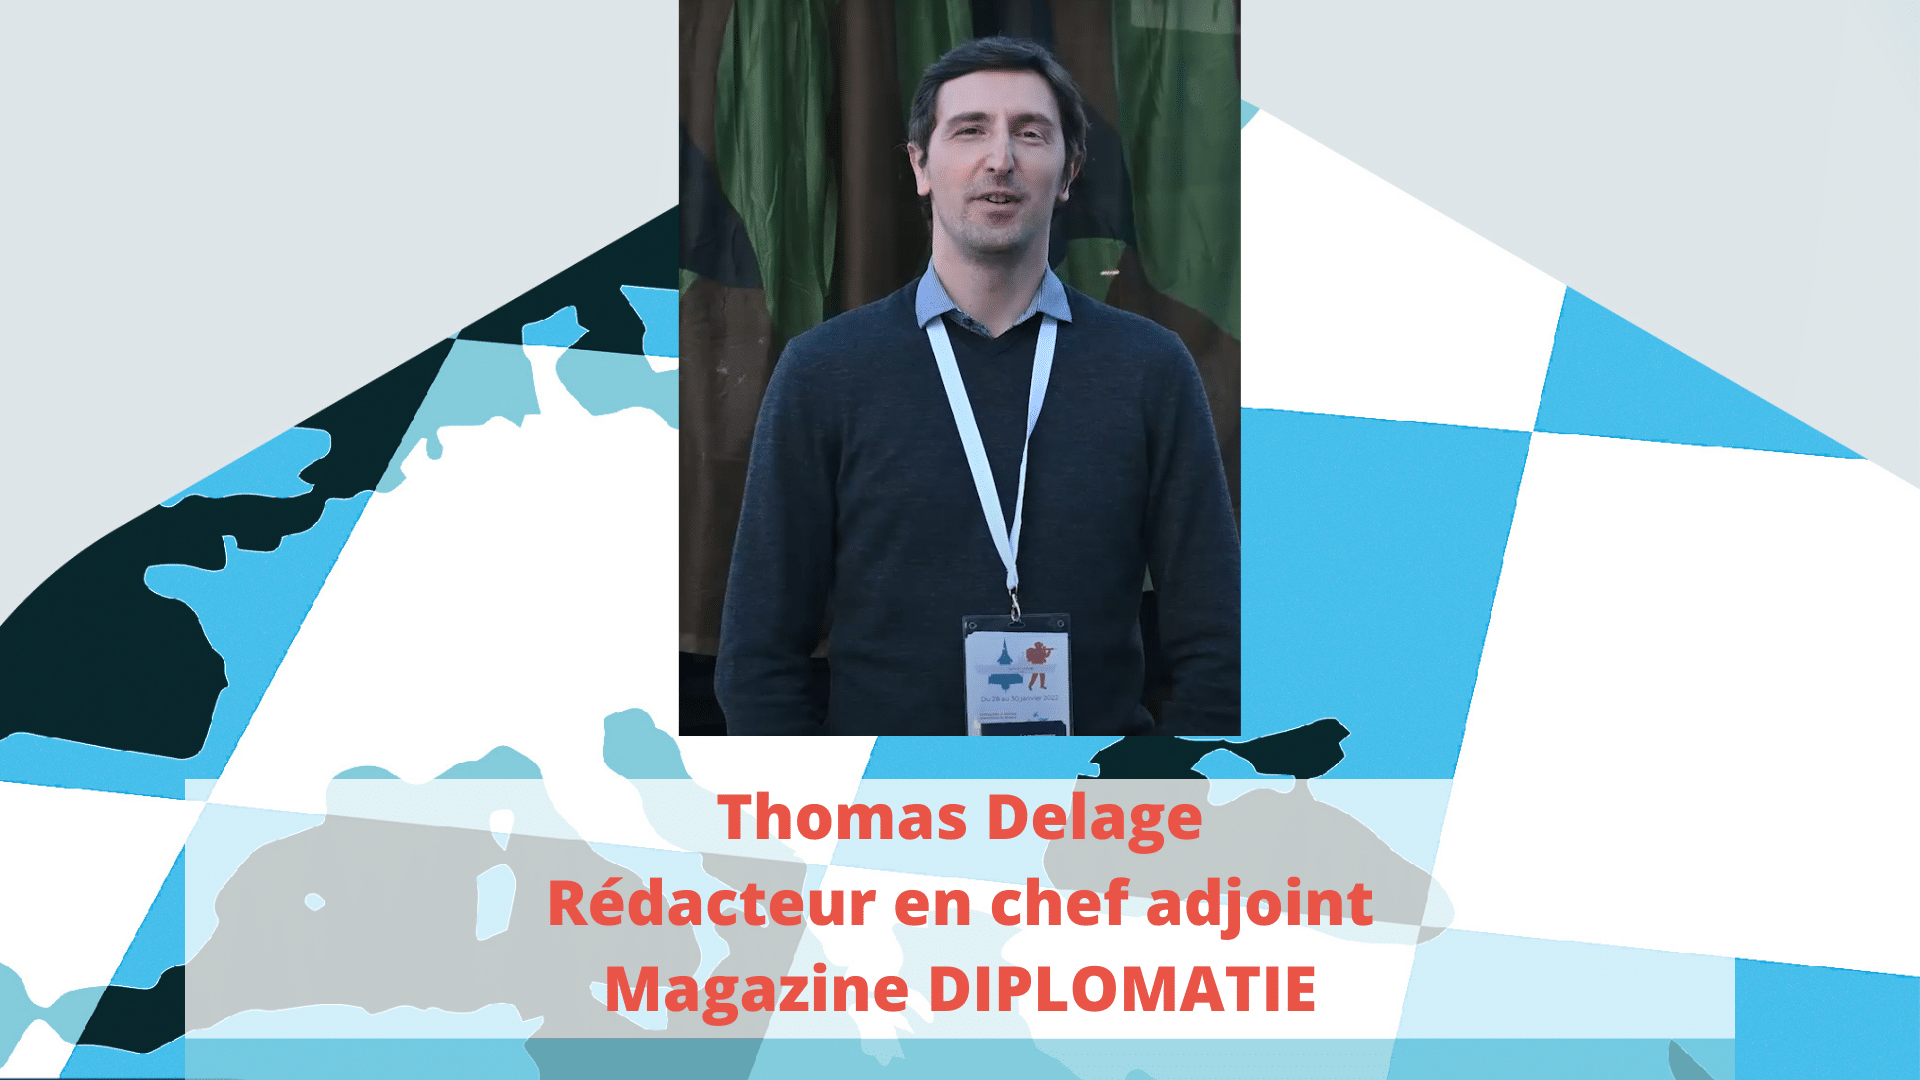 Les RSMed selon Thomas Delage, Rédacteur en chef adjoint du magazine Diplomatie